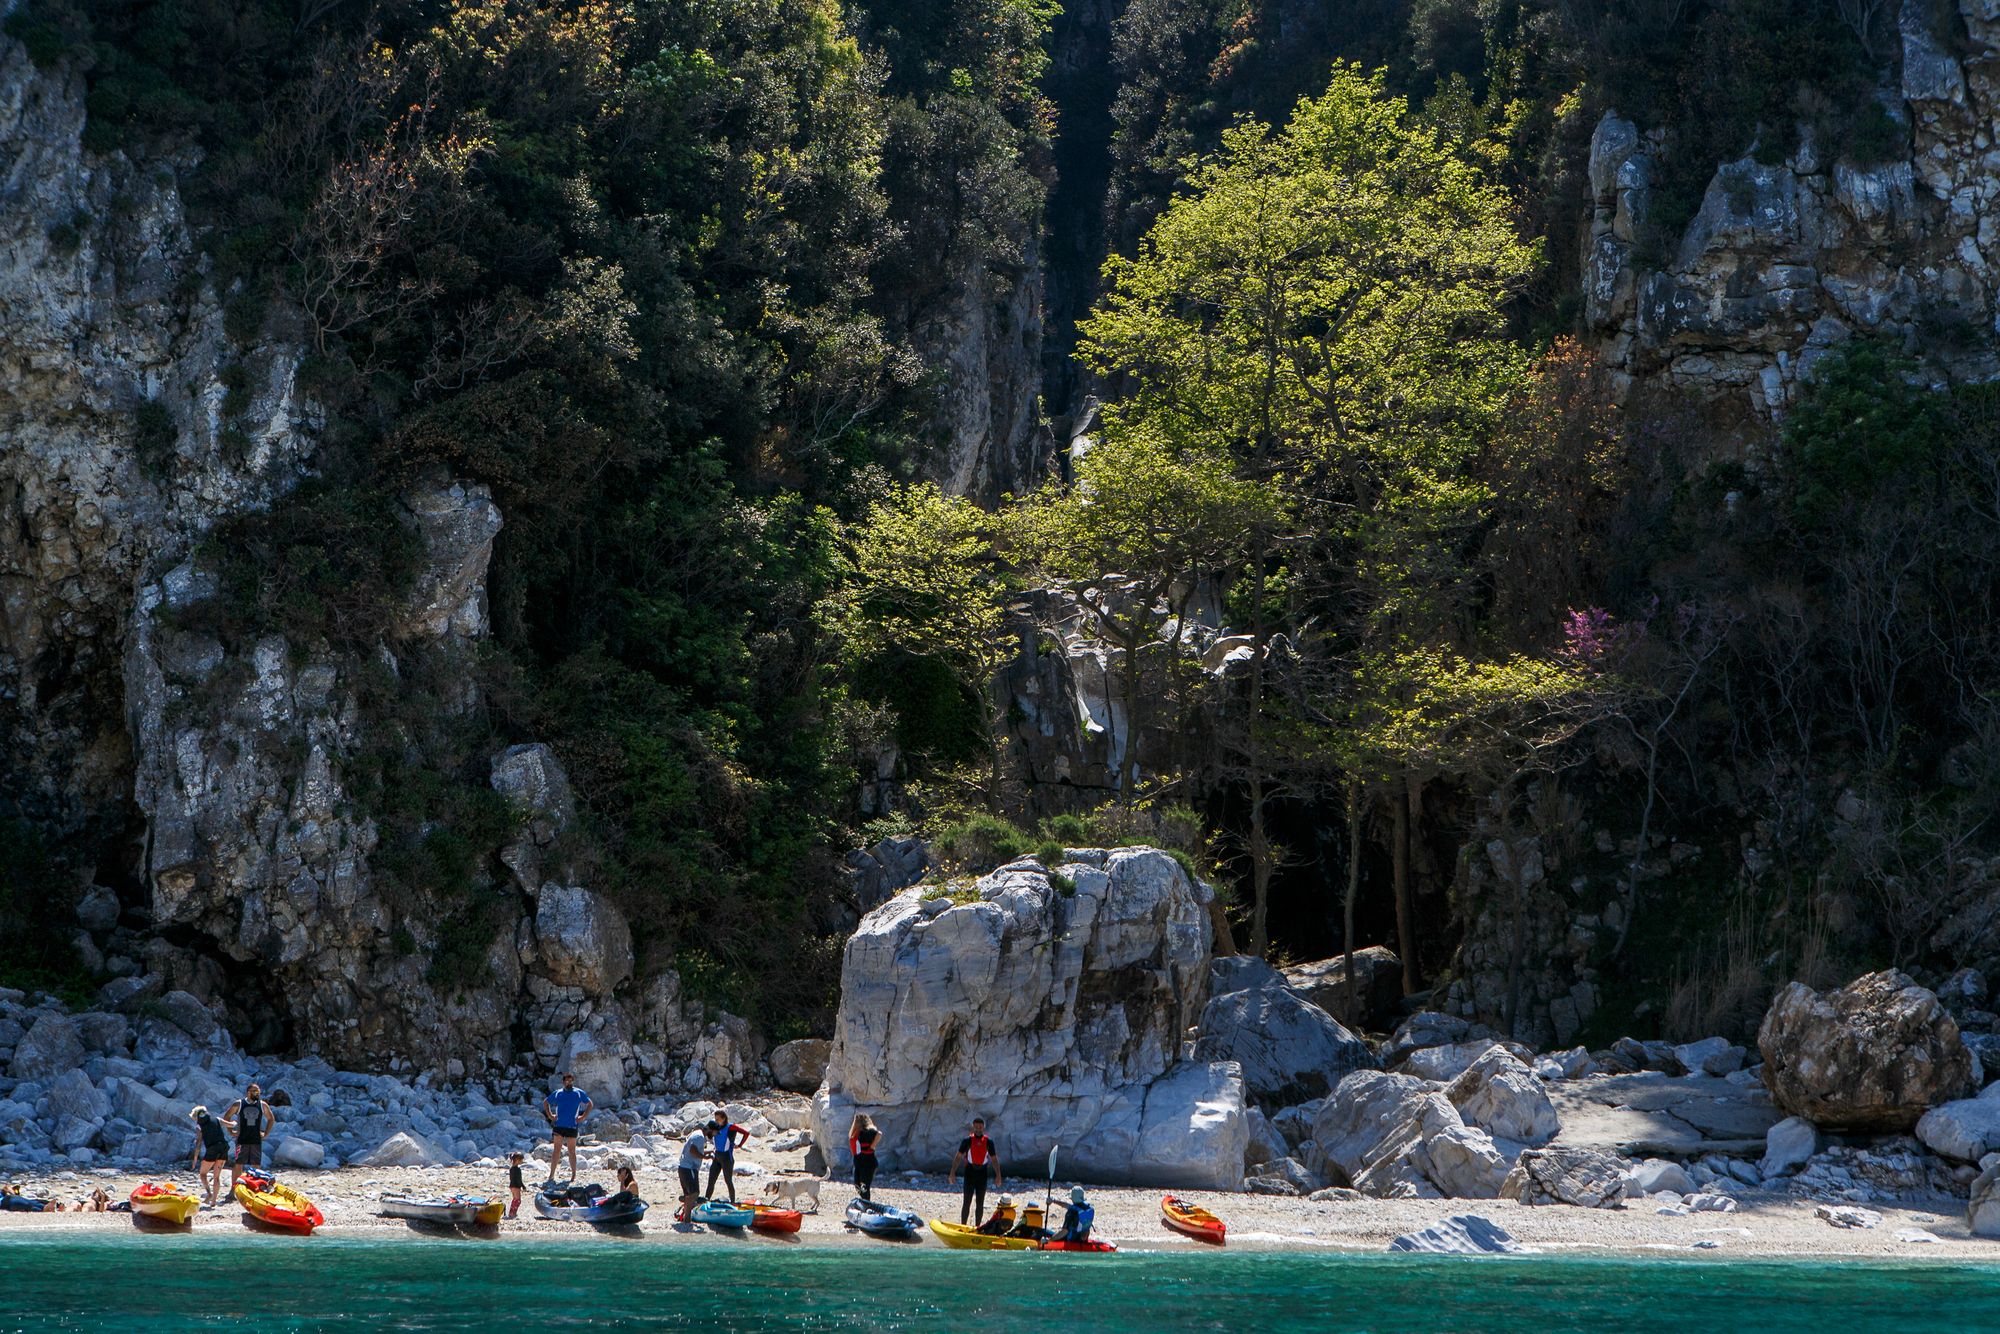 Un gruppo di kayakisti su una spiaggia con sfondo roccioso nella penisola di Pelion, in Grecia.